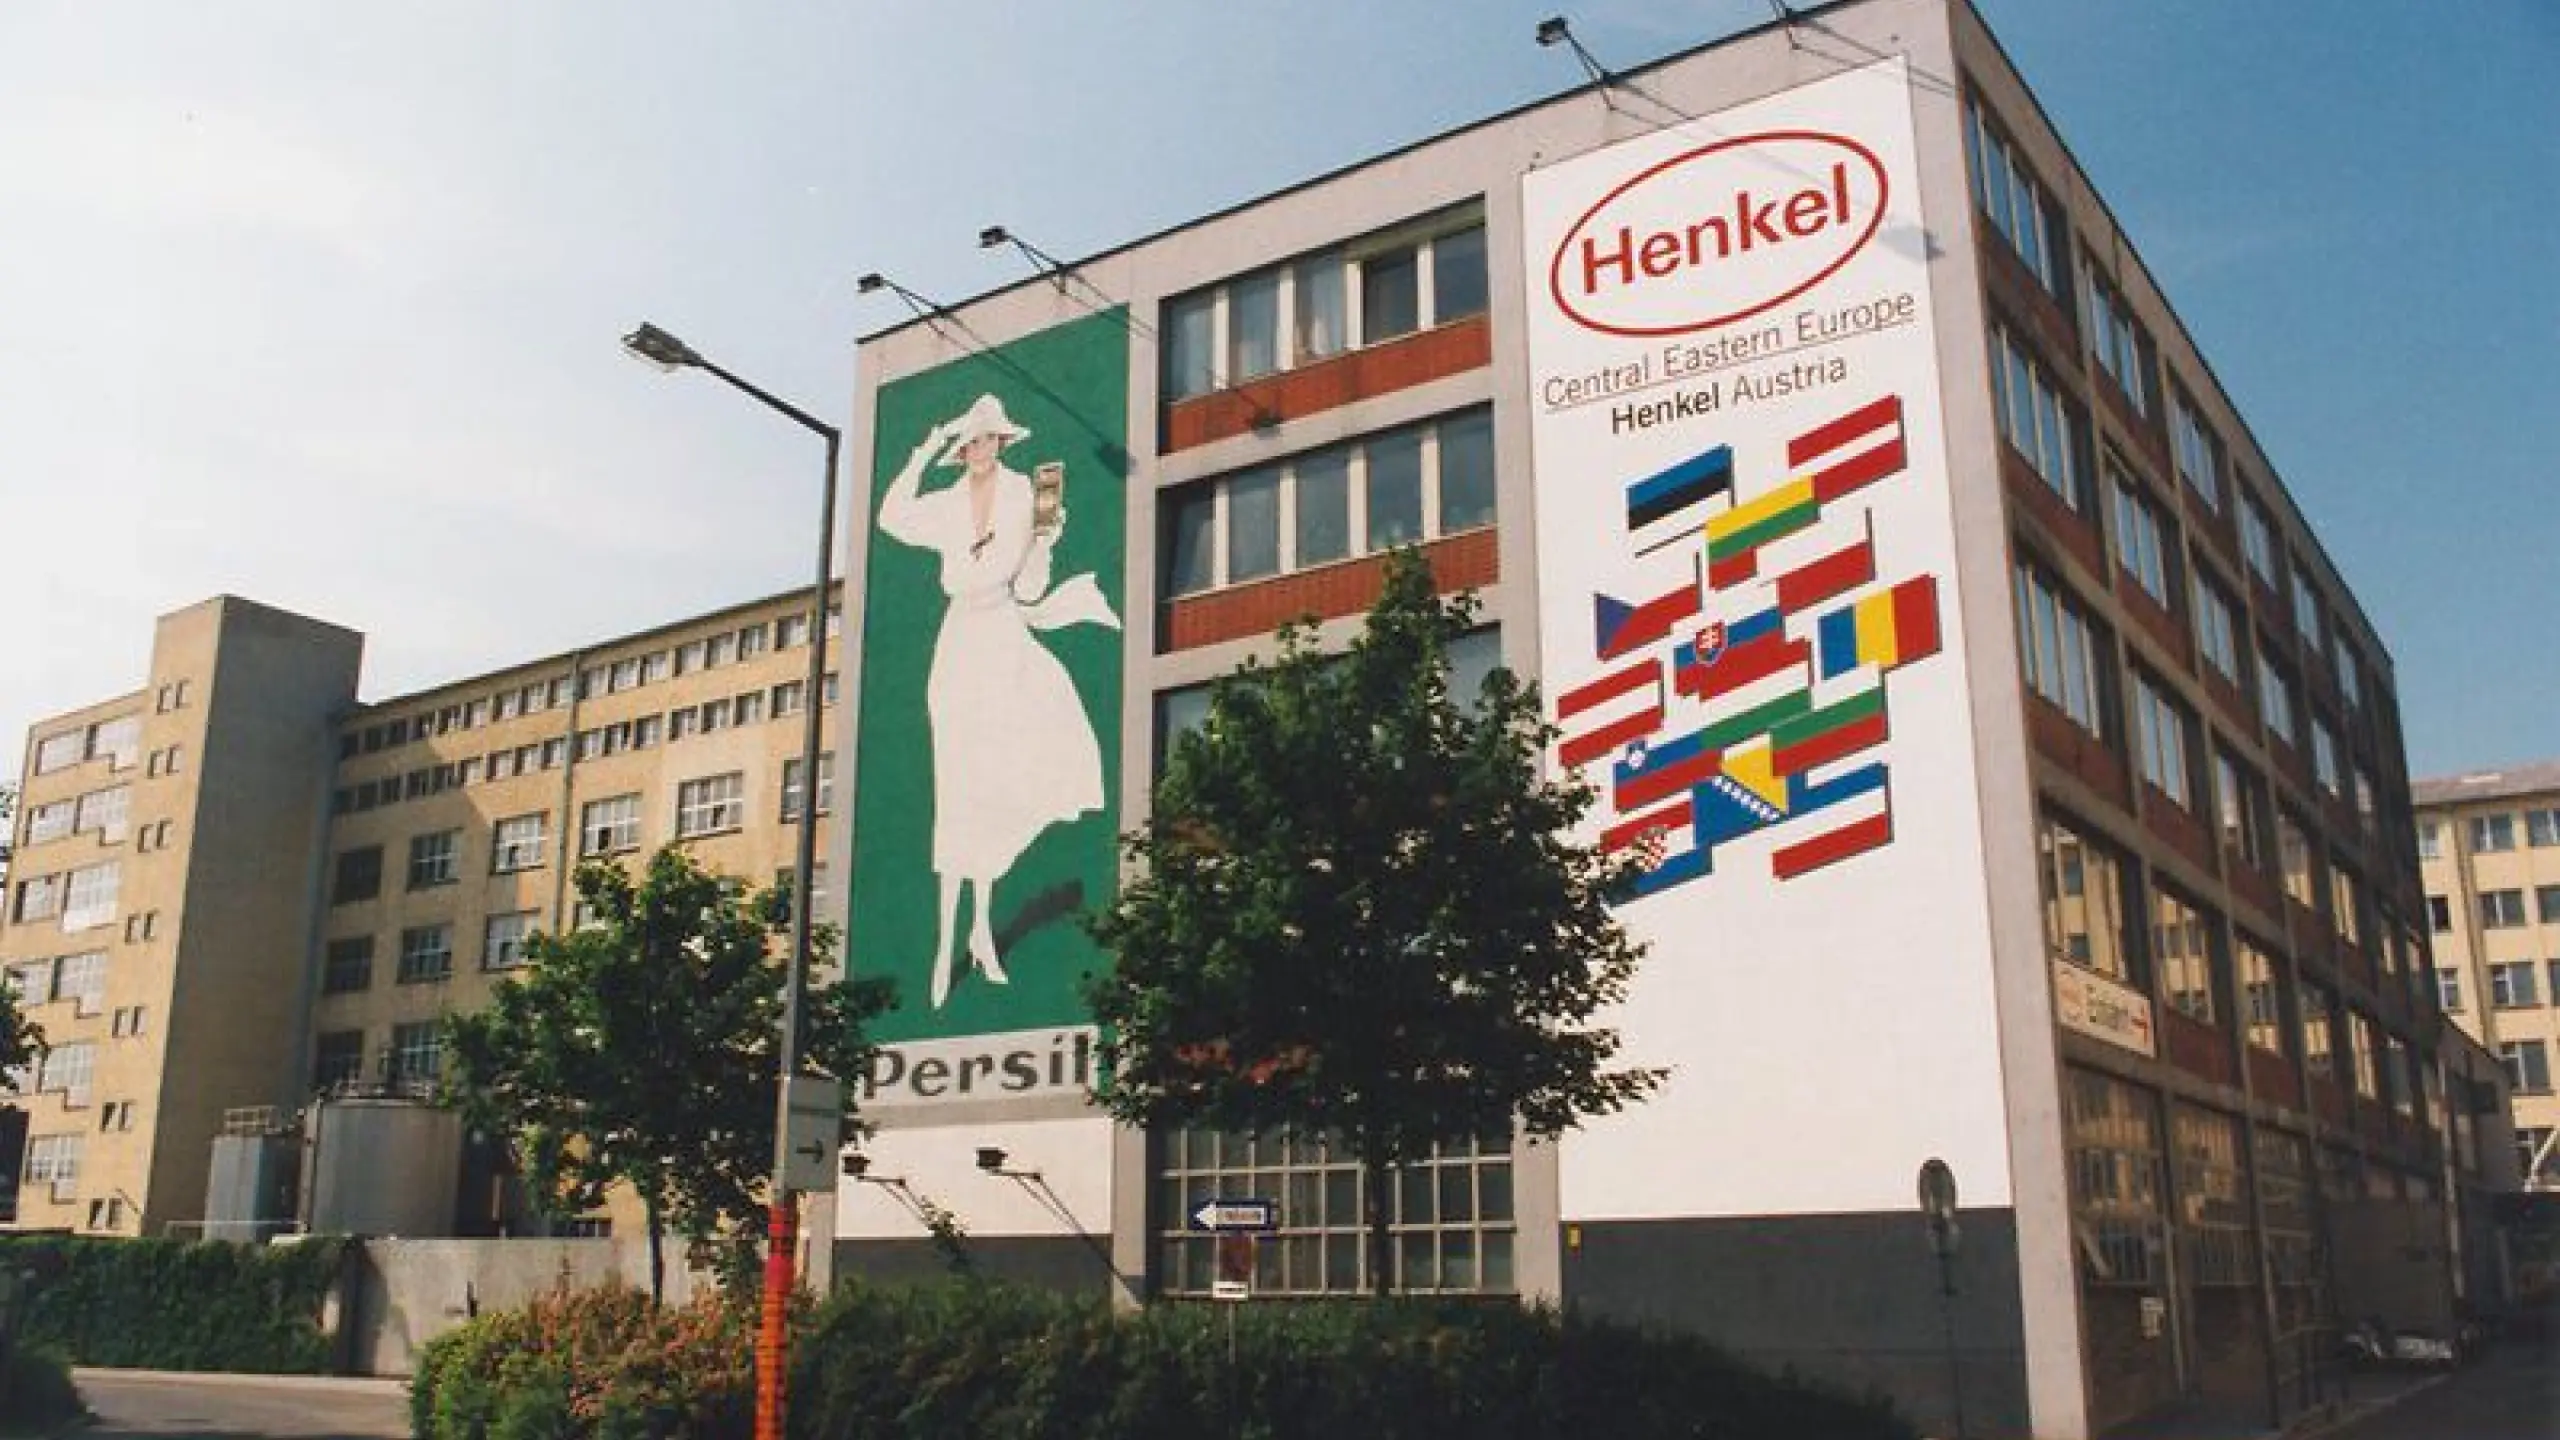 Henkel Central Eastern Europe - Weltmarktführer für Reinigungsmittel und Klebstoff